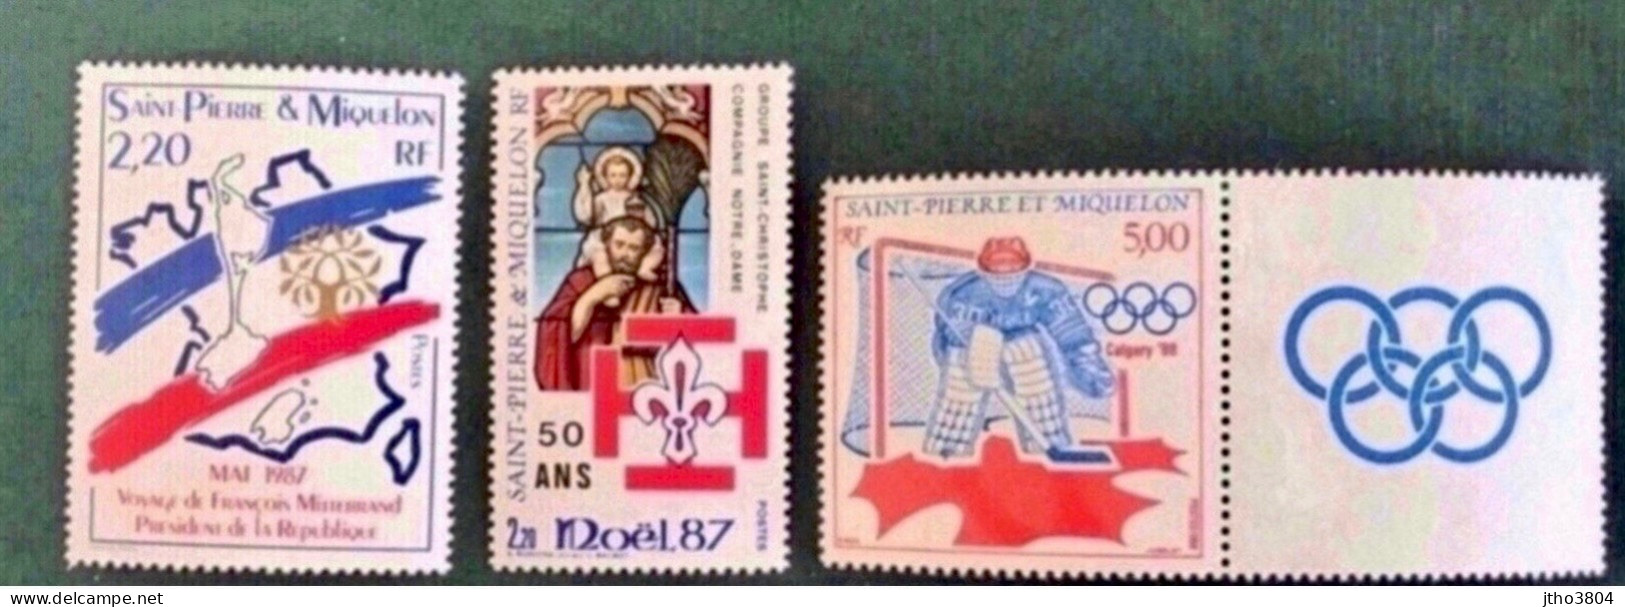 SAINT PIERRE ET MIQUELON SPM Lot 1986 1989  3 V Neuf MNH ** YT 478 483 487 - Unused Stamps